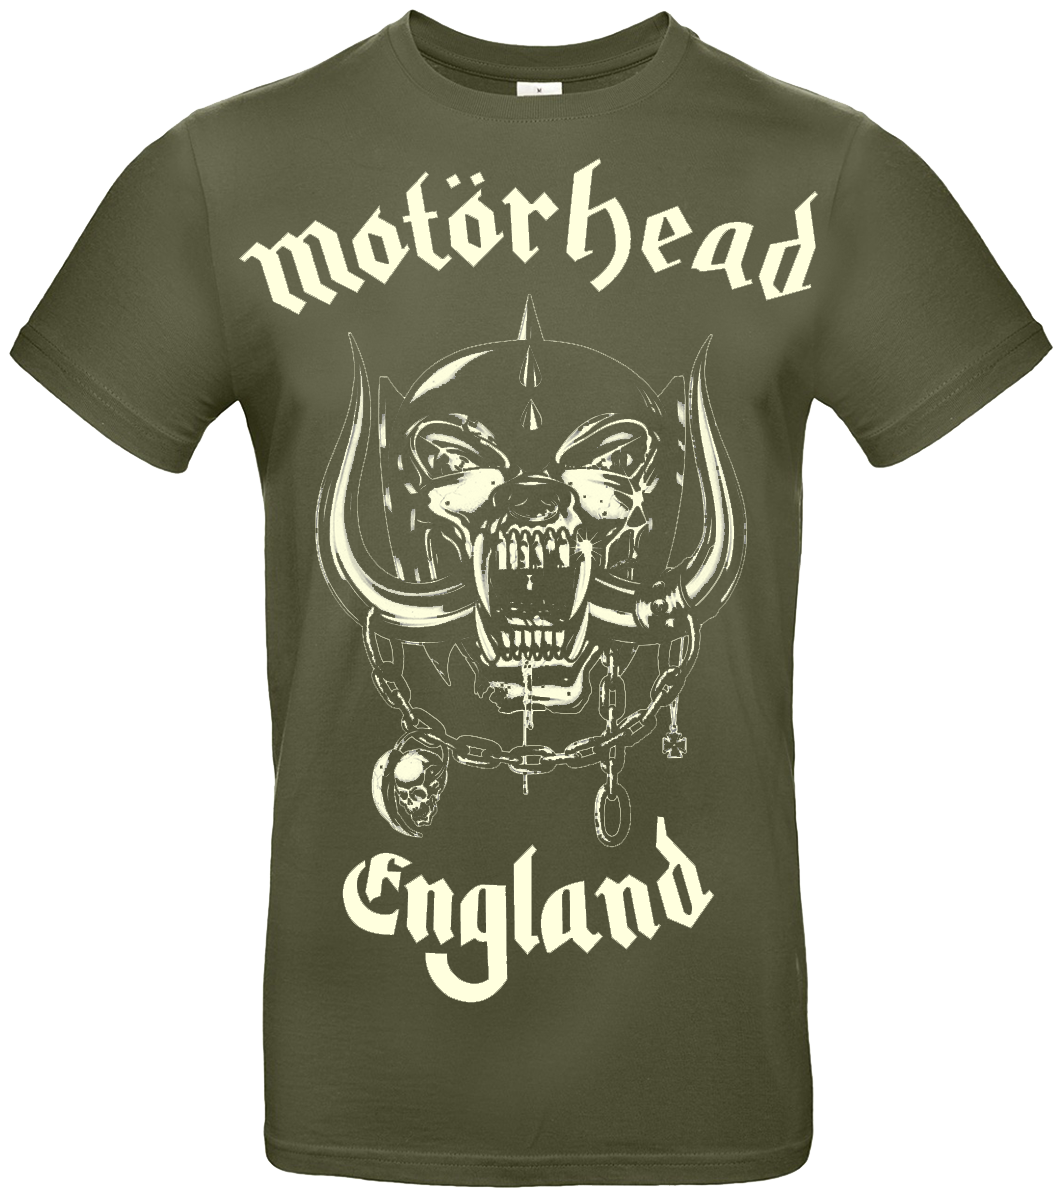 Motörhead - England - T-Shirt - khaki